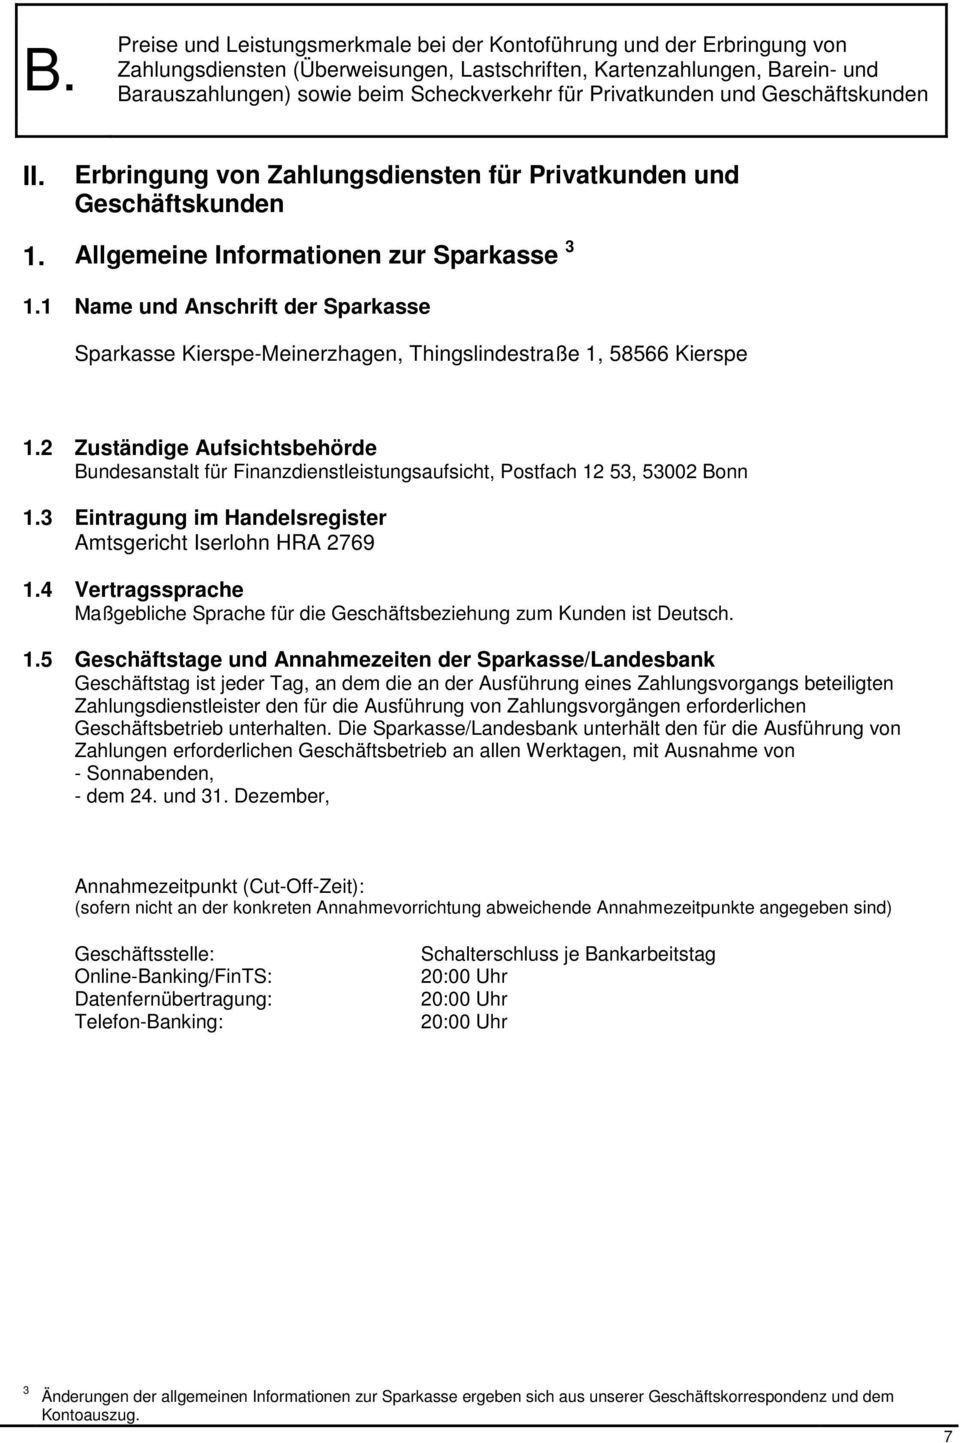 2 Zuständige Aufsichtsbehörde Bundesanstalt für Finanzdienstleistungsaufsicht, Postfach 12 53, 53002 Bonn 1.3 Eintragung im Handelsregister Amtsgericht Iserlohn HRA 2769 1.